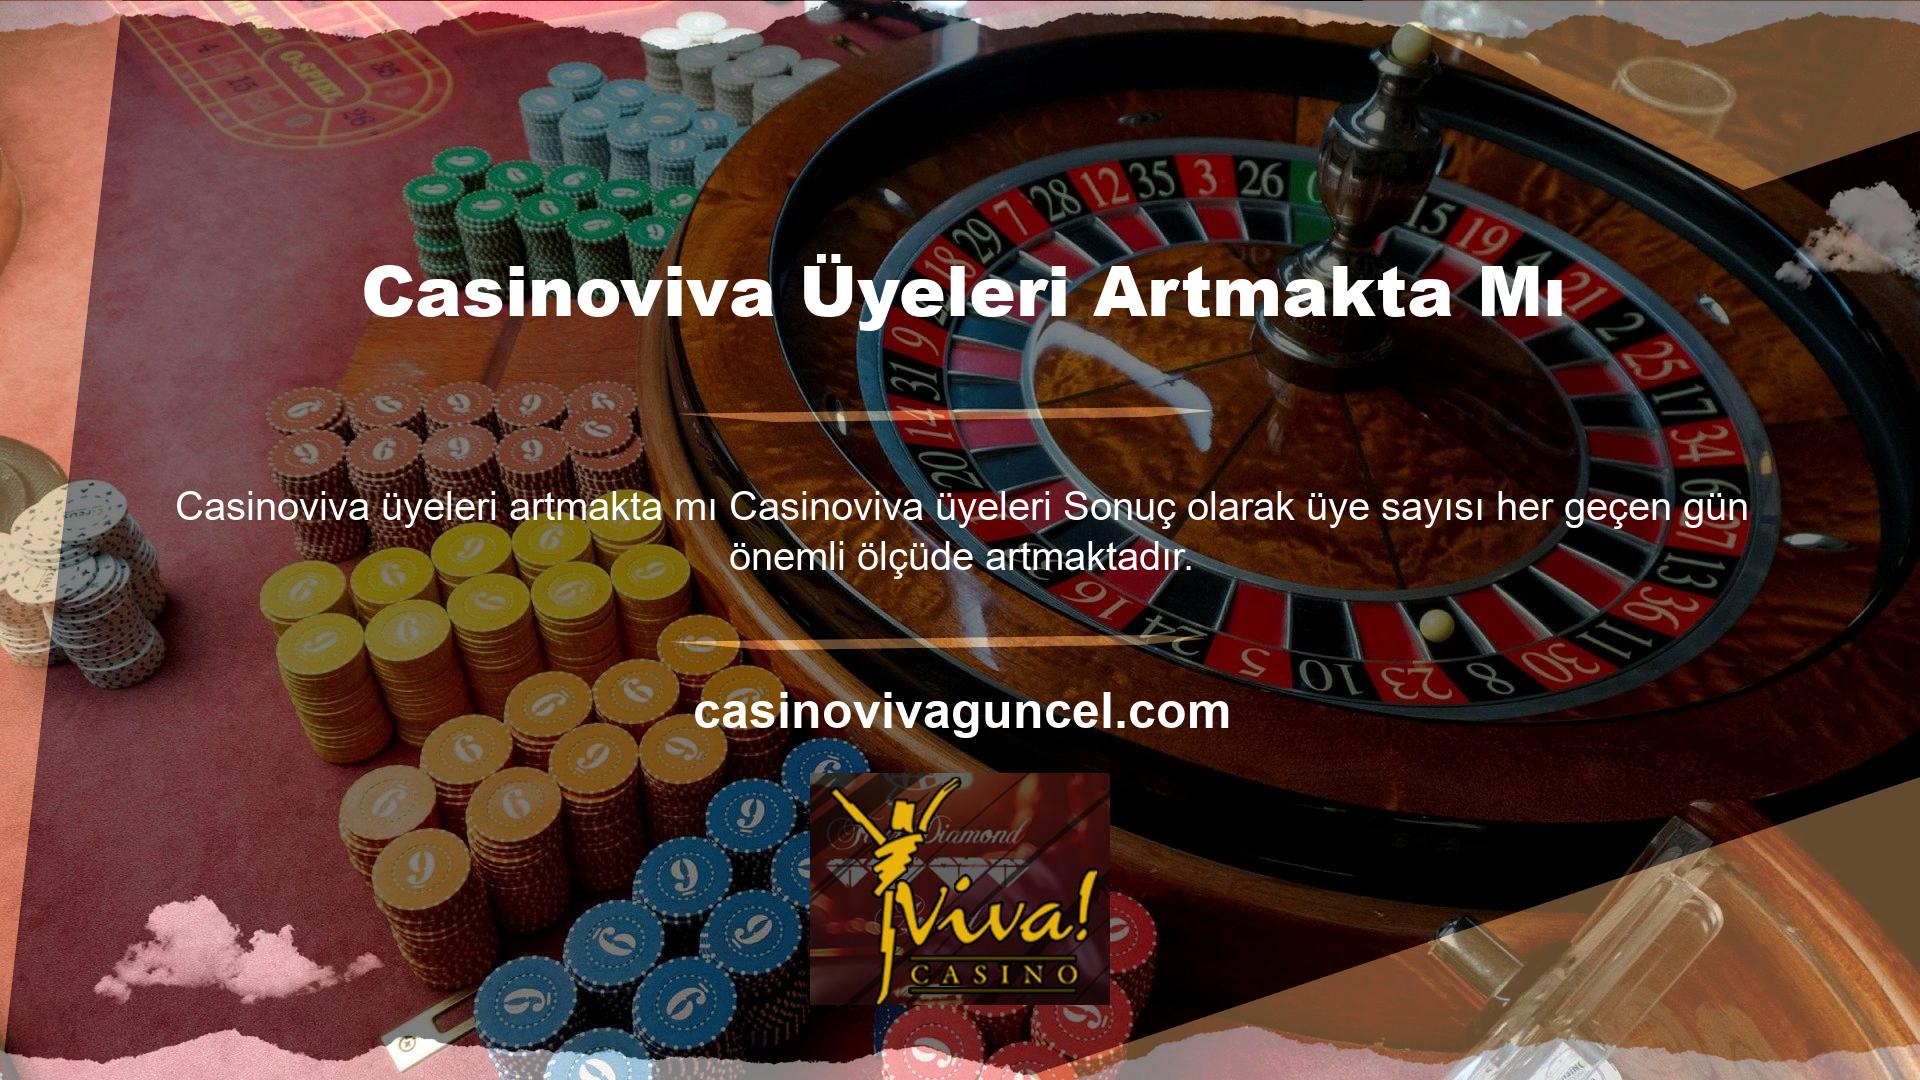 Ülkedeki birçok casino sitesi gibi Casinoviva de yasa dışı bir casino sitesidir